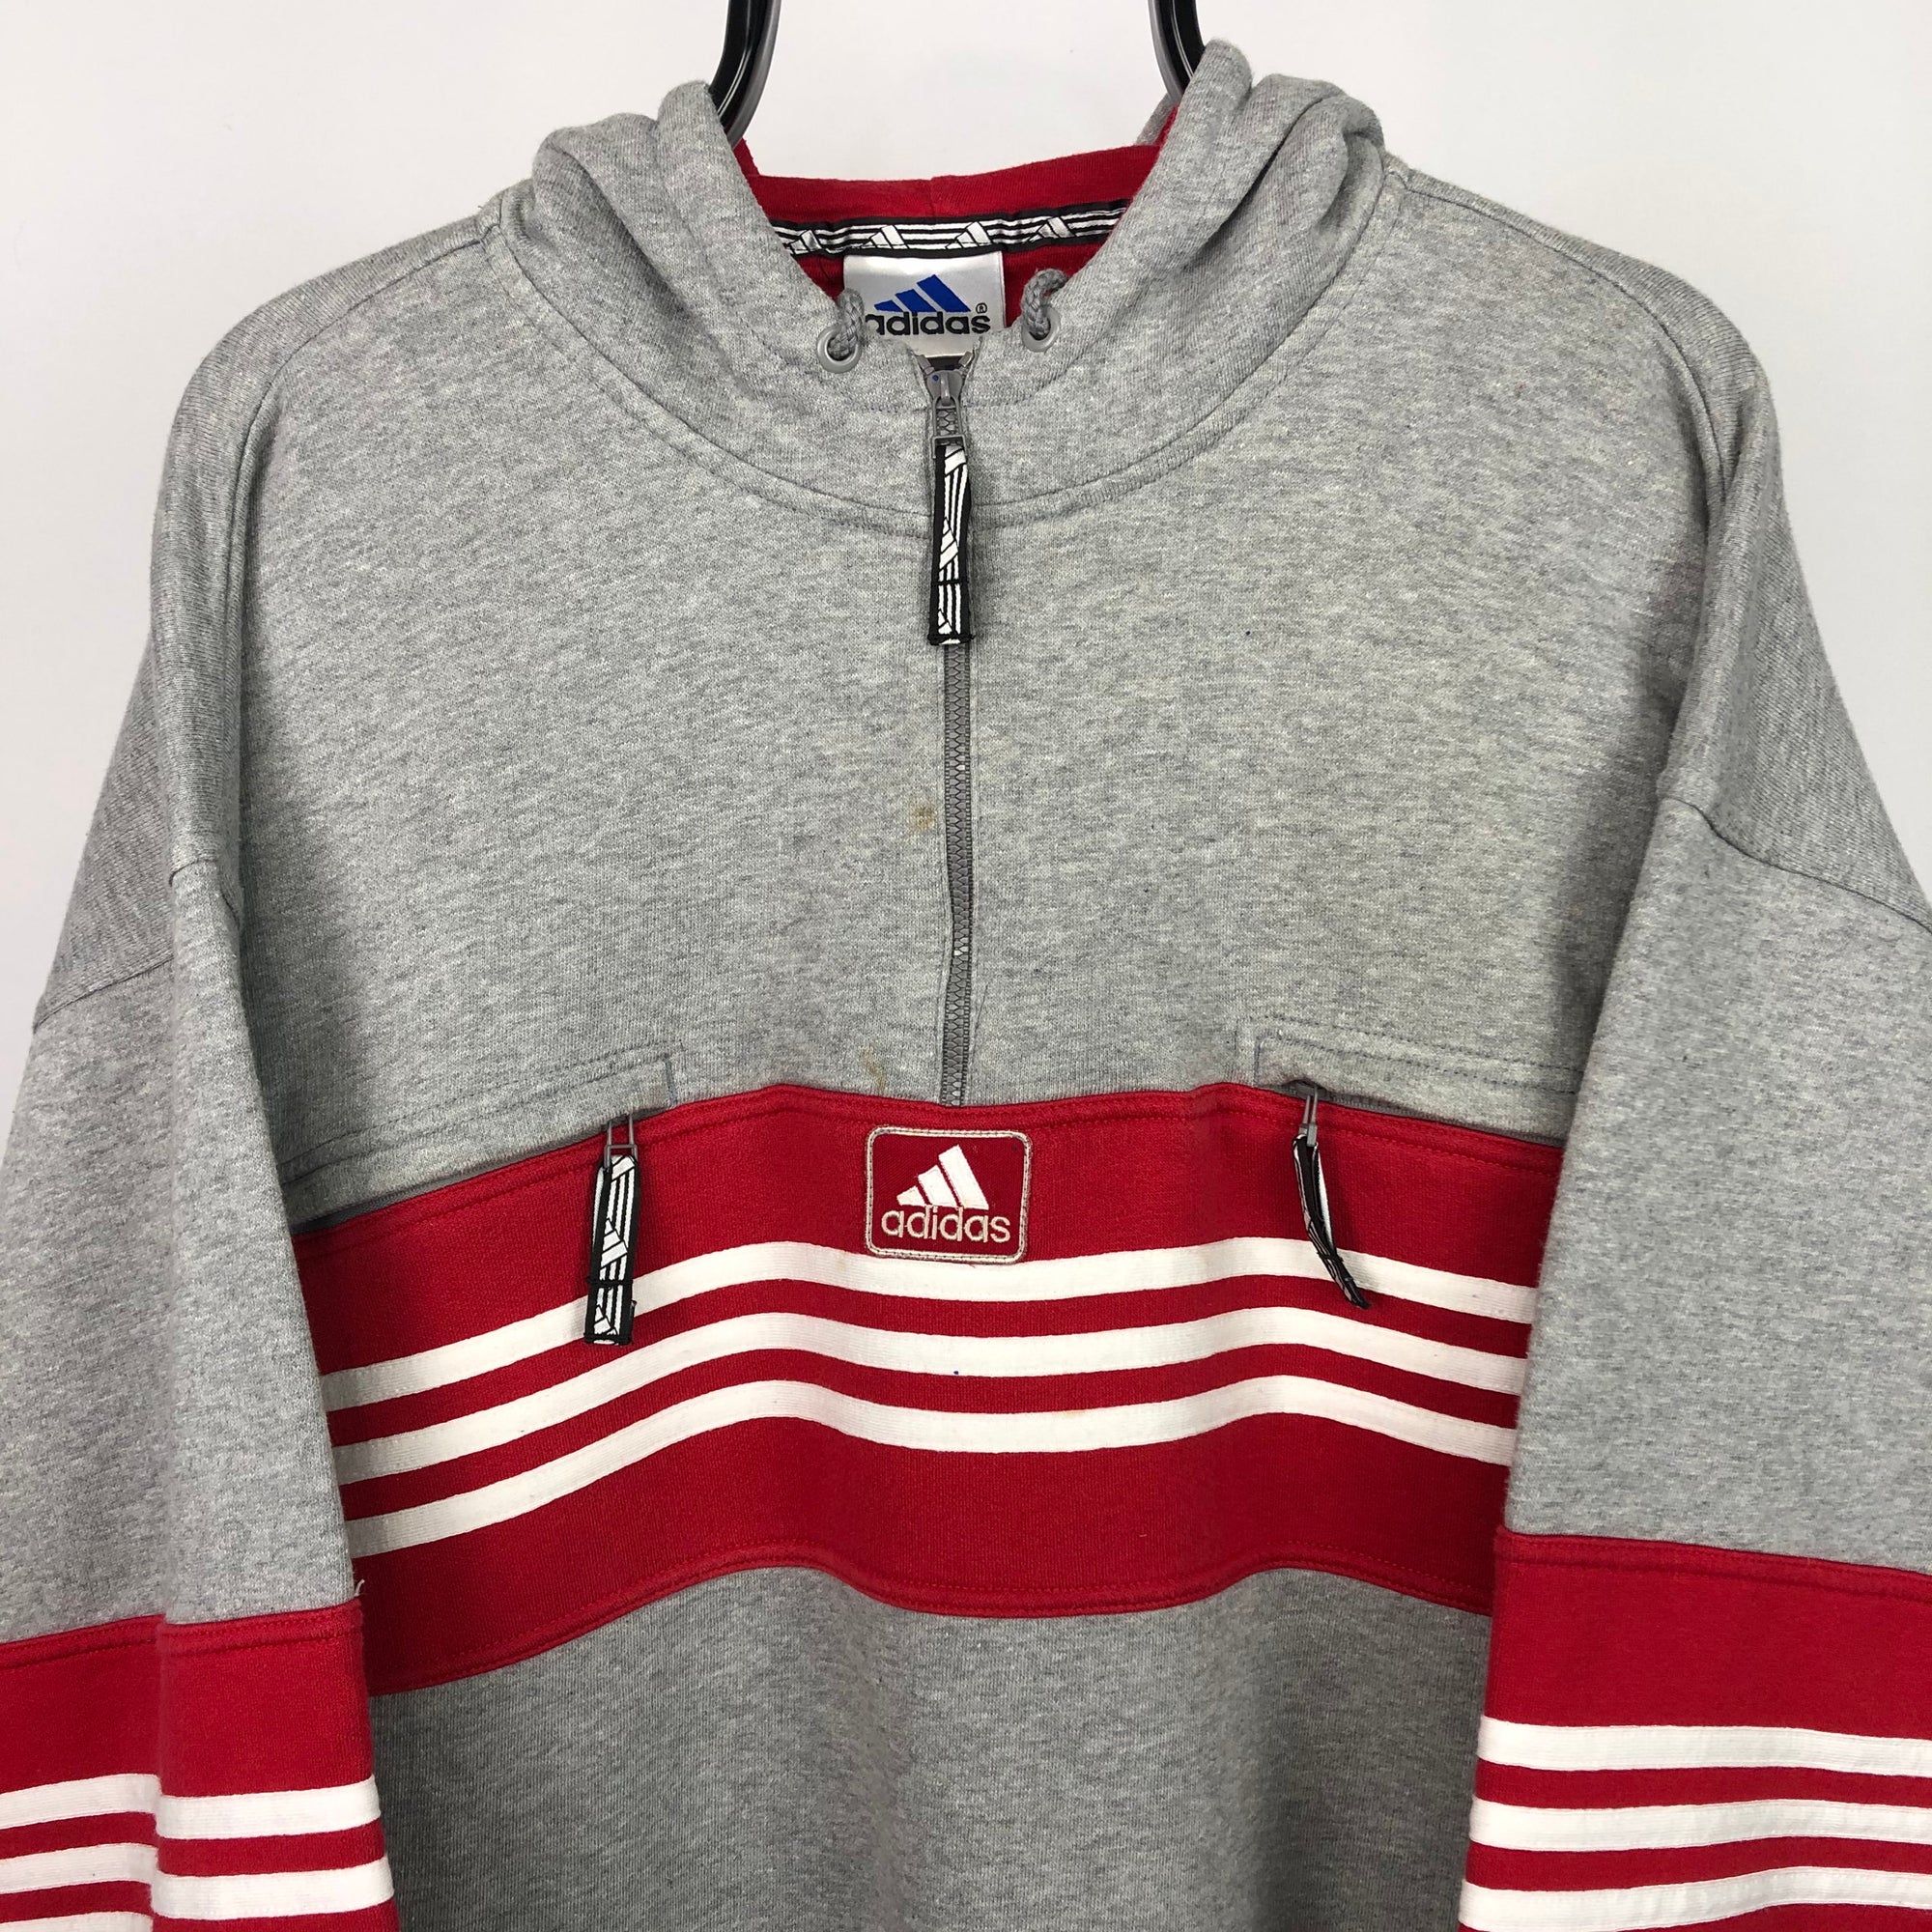 Vintage 90s Adidas 1/4 Zip Sweatshirt in Grey/Red - Men's Large/Women's XL